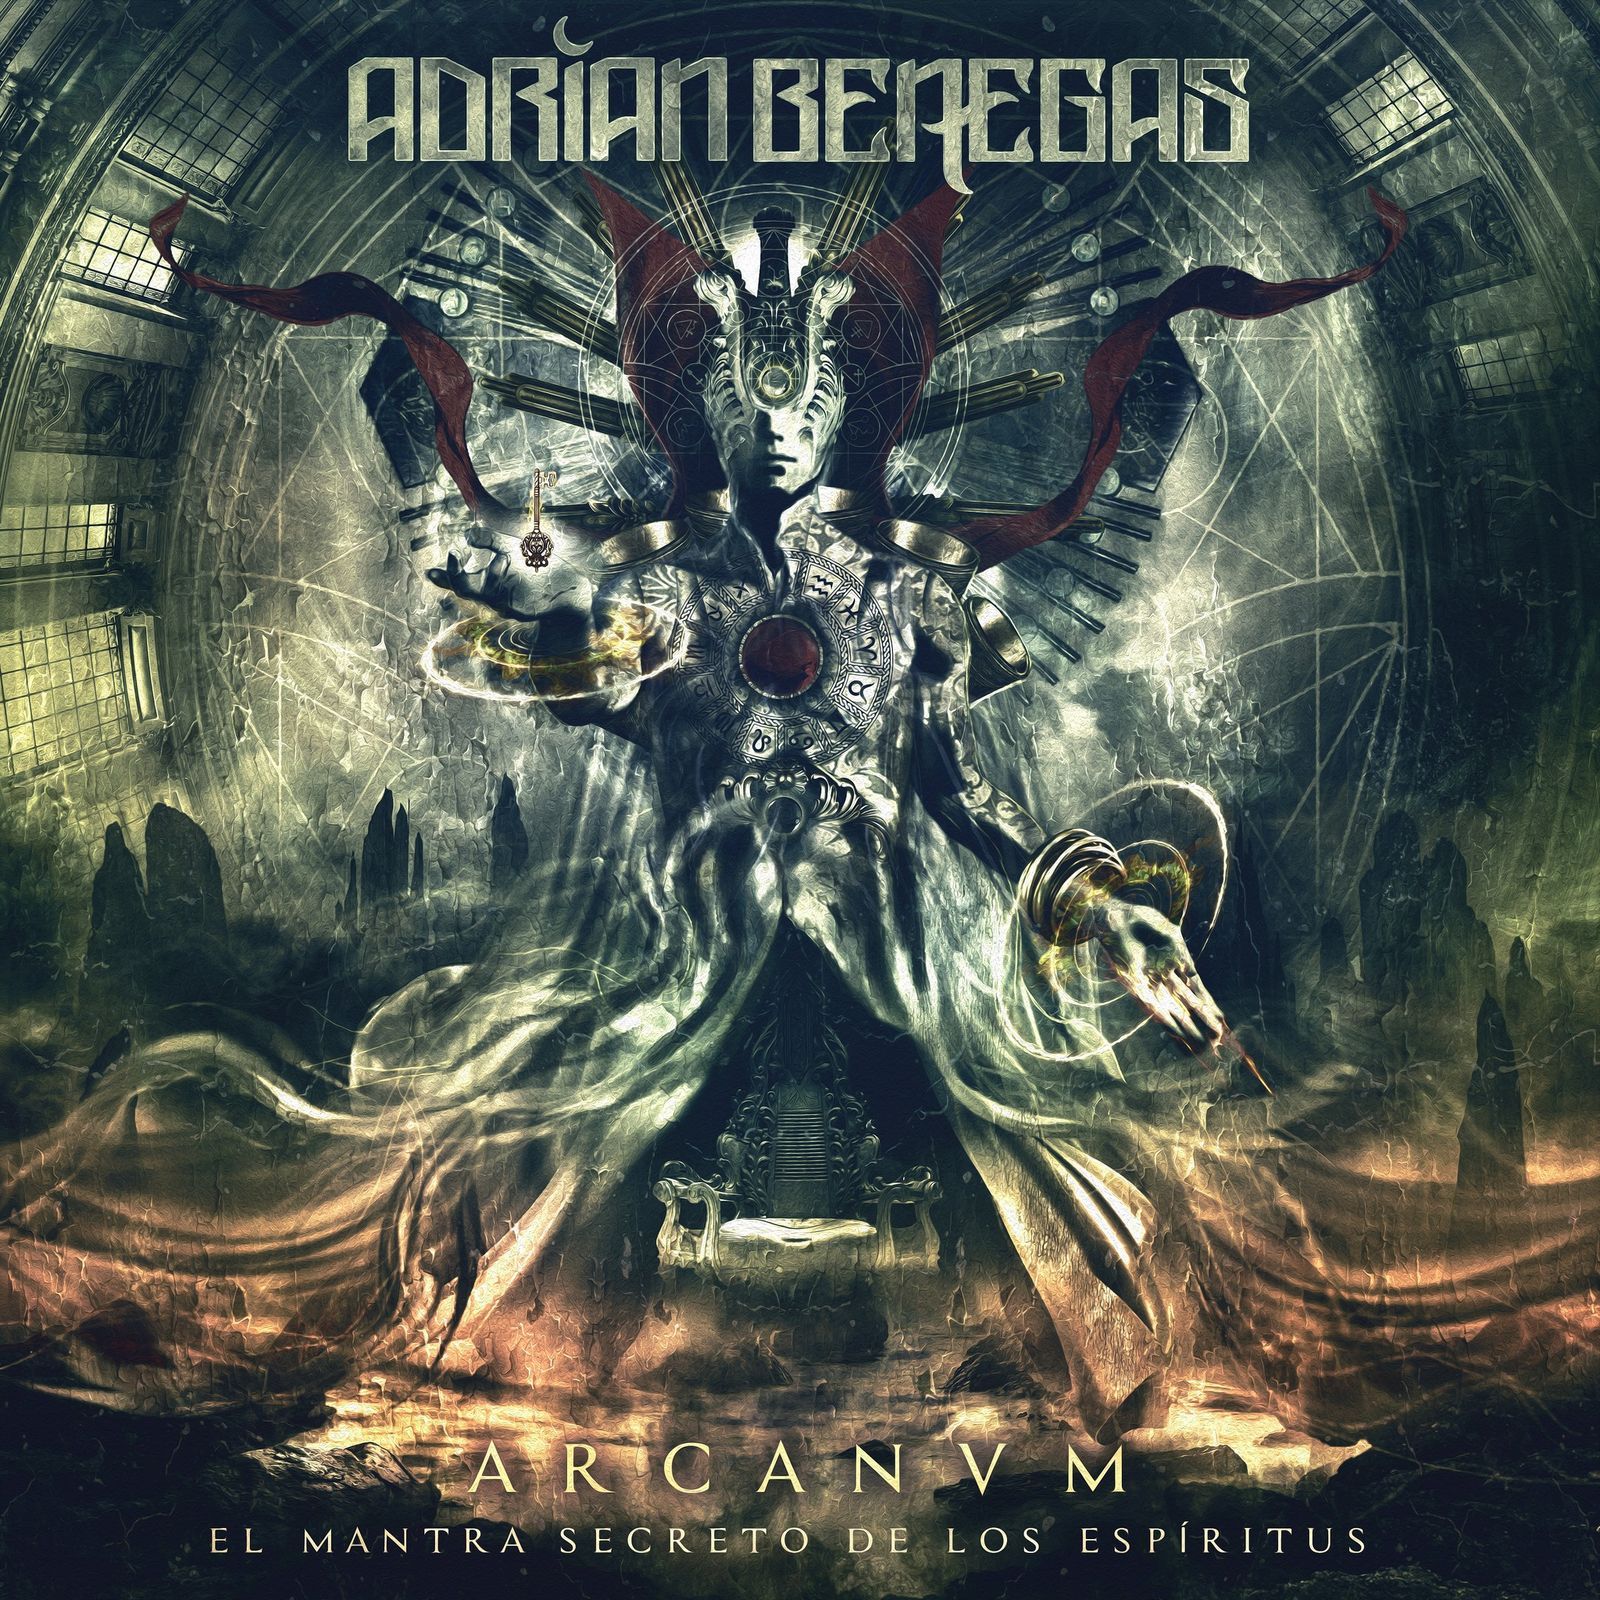 Adrian Benegas - Sanctum (lyric video)